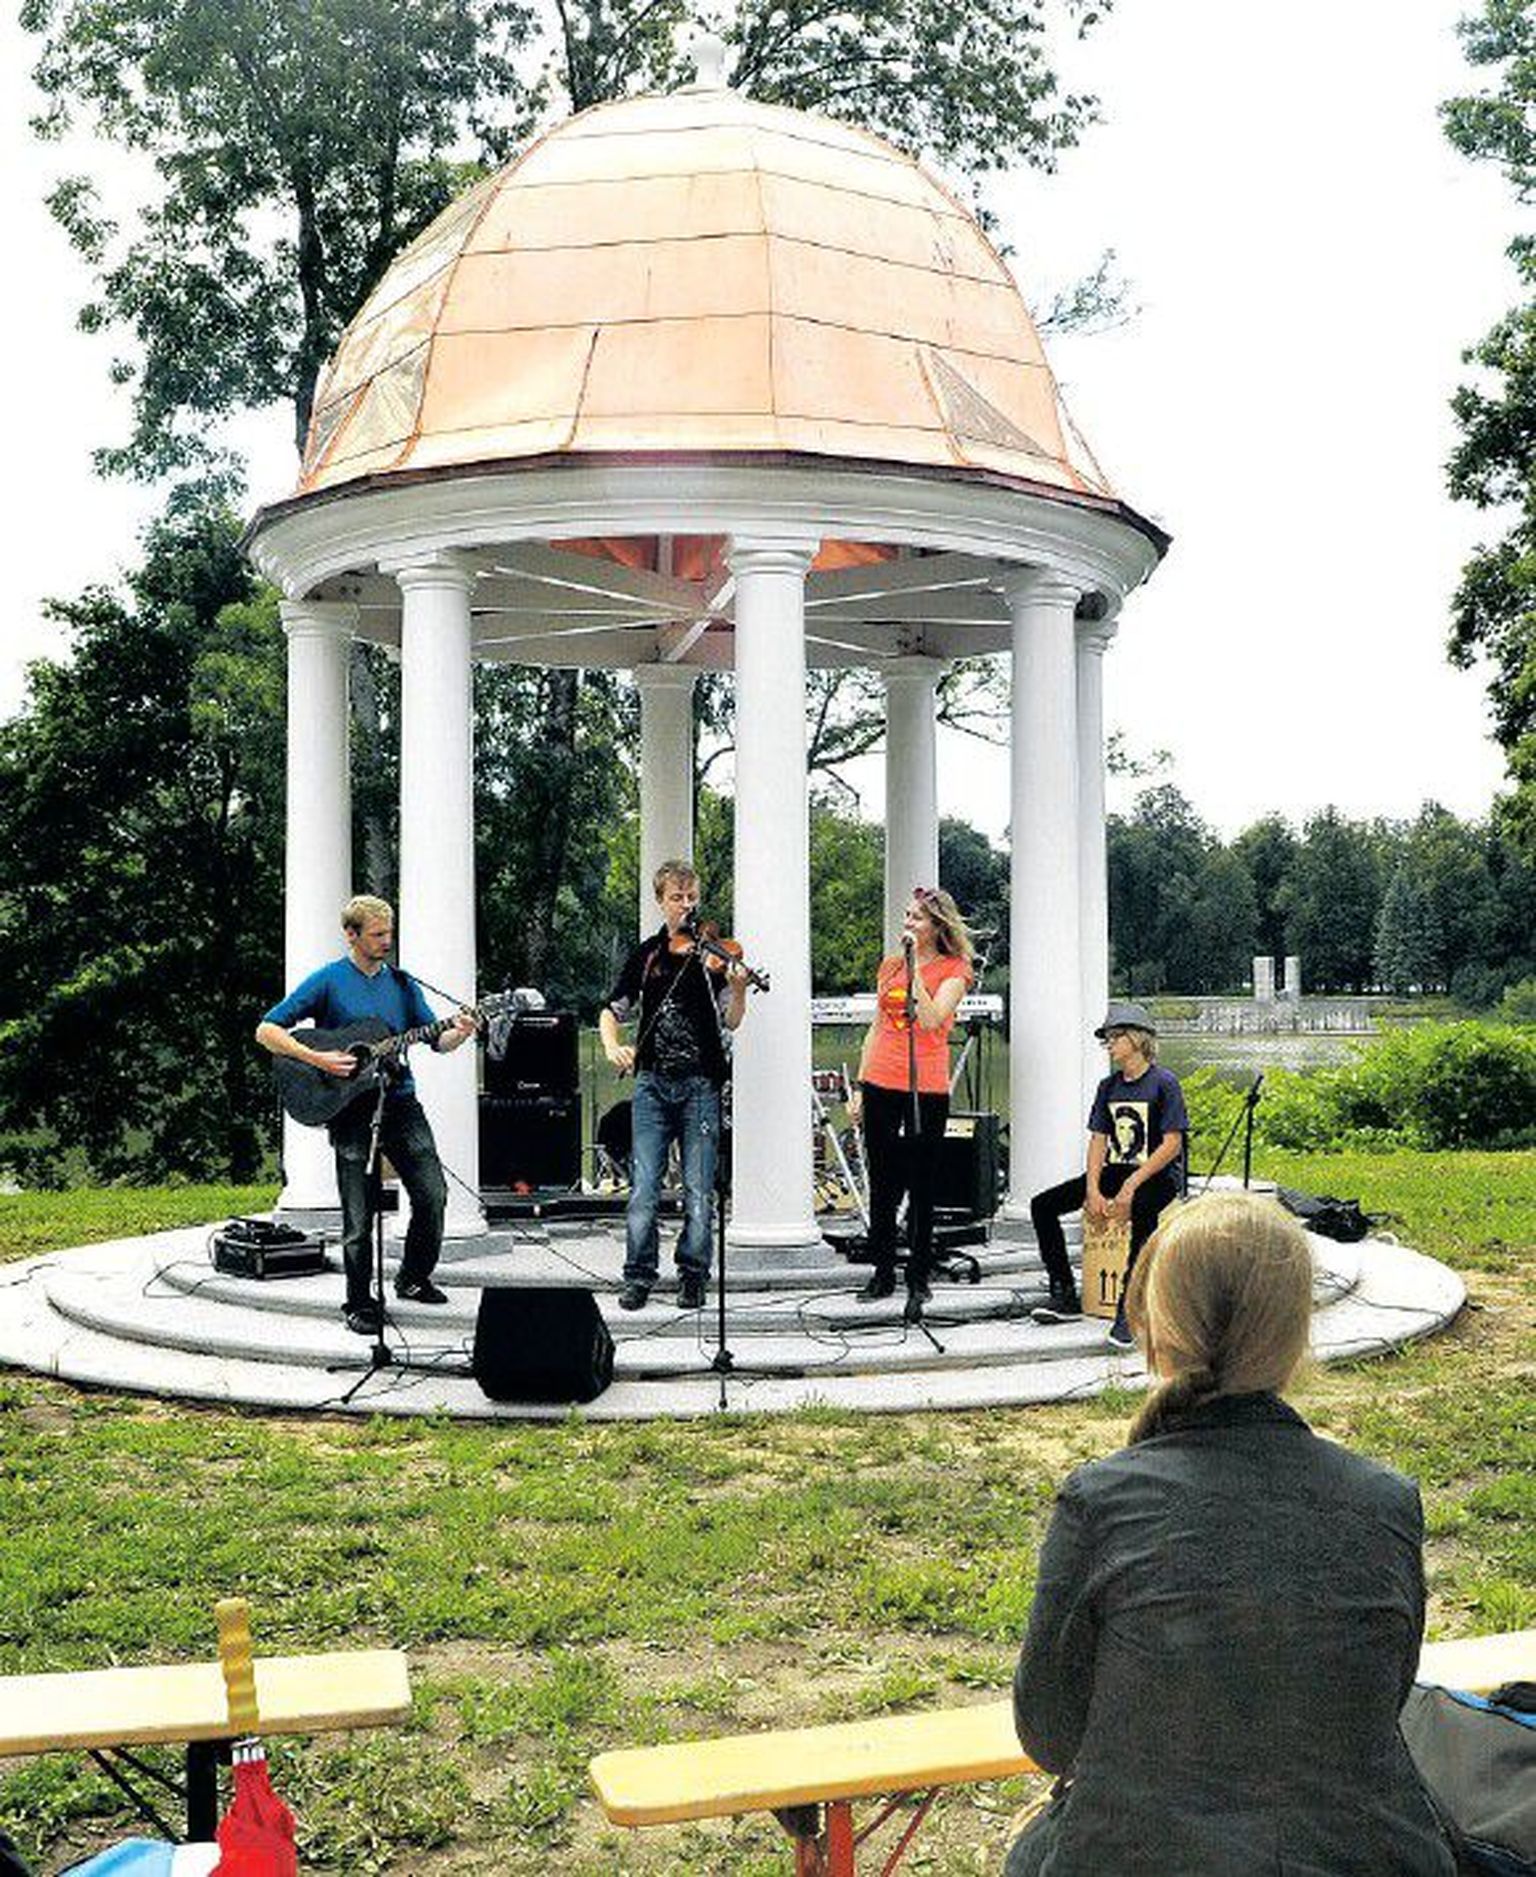 Päris esimene kontsert oli Eesti Rahva Muuseumi vastses rotundis juba jaanipäeval, kuid eilne noorte muusikute esinemine avas muuseumi pühapäevaste kontsertide sarja.